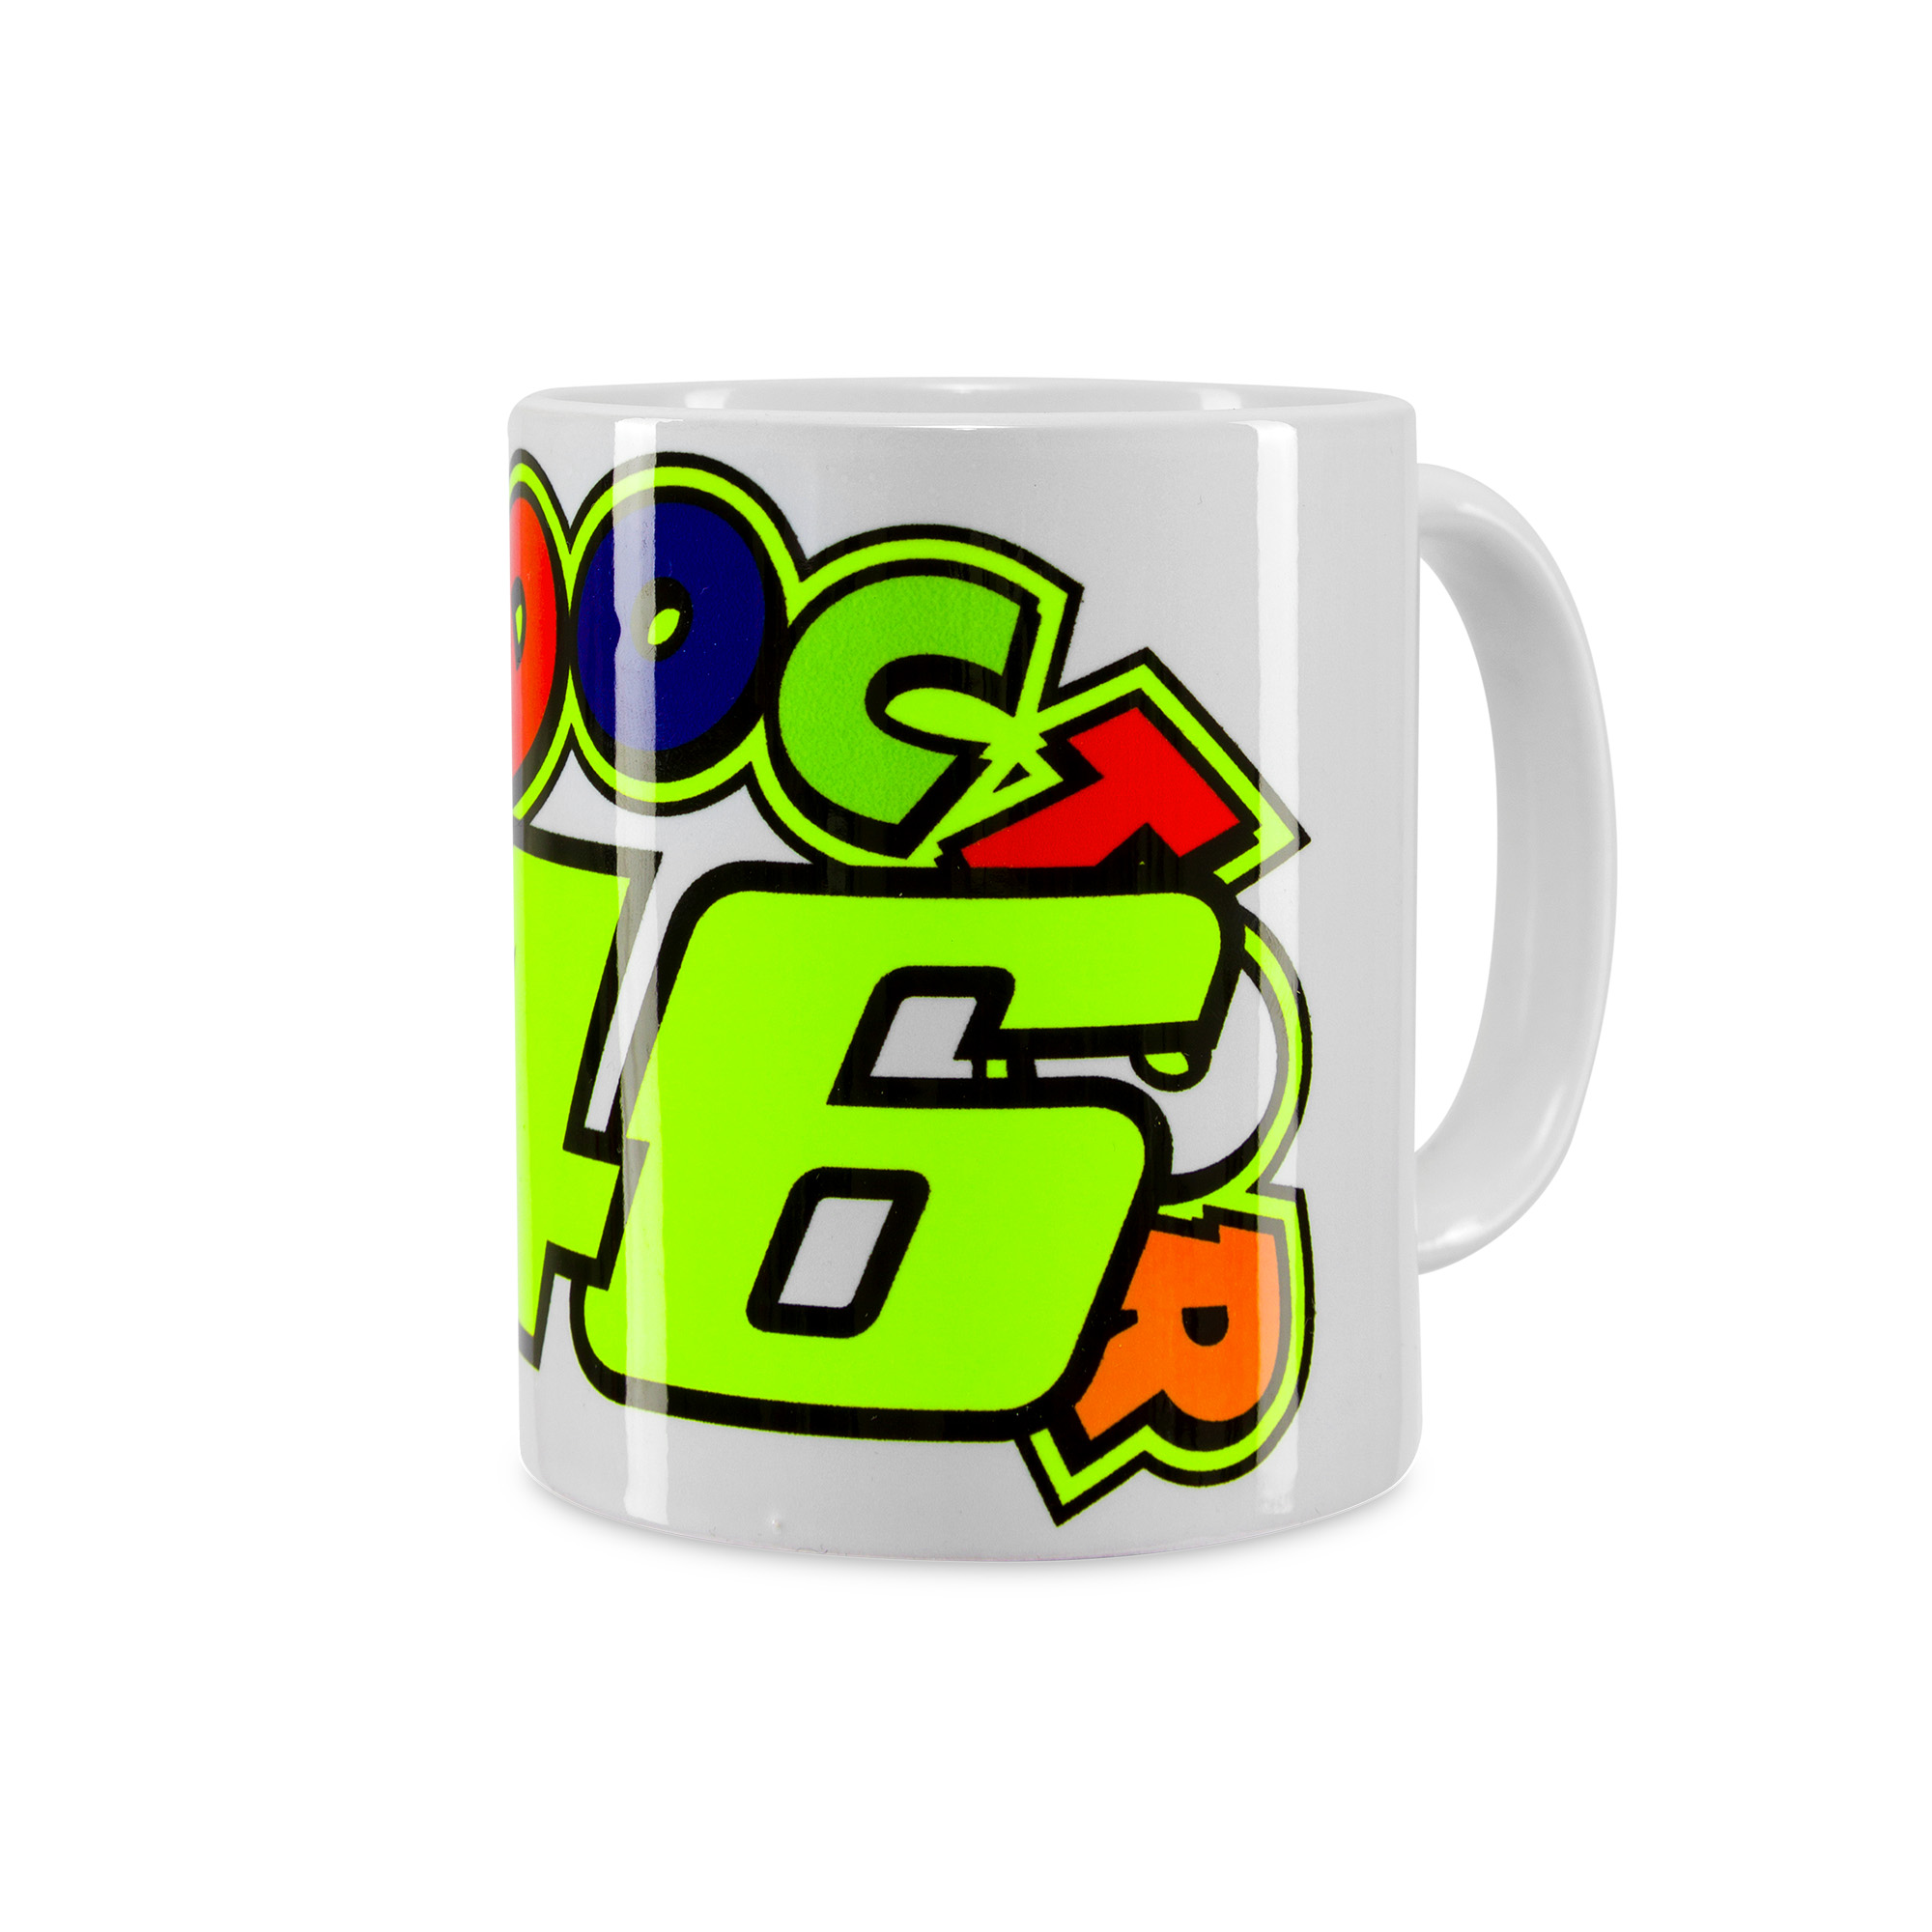 Valentino Rossi mug "46" - white